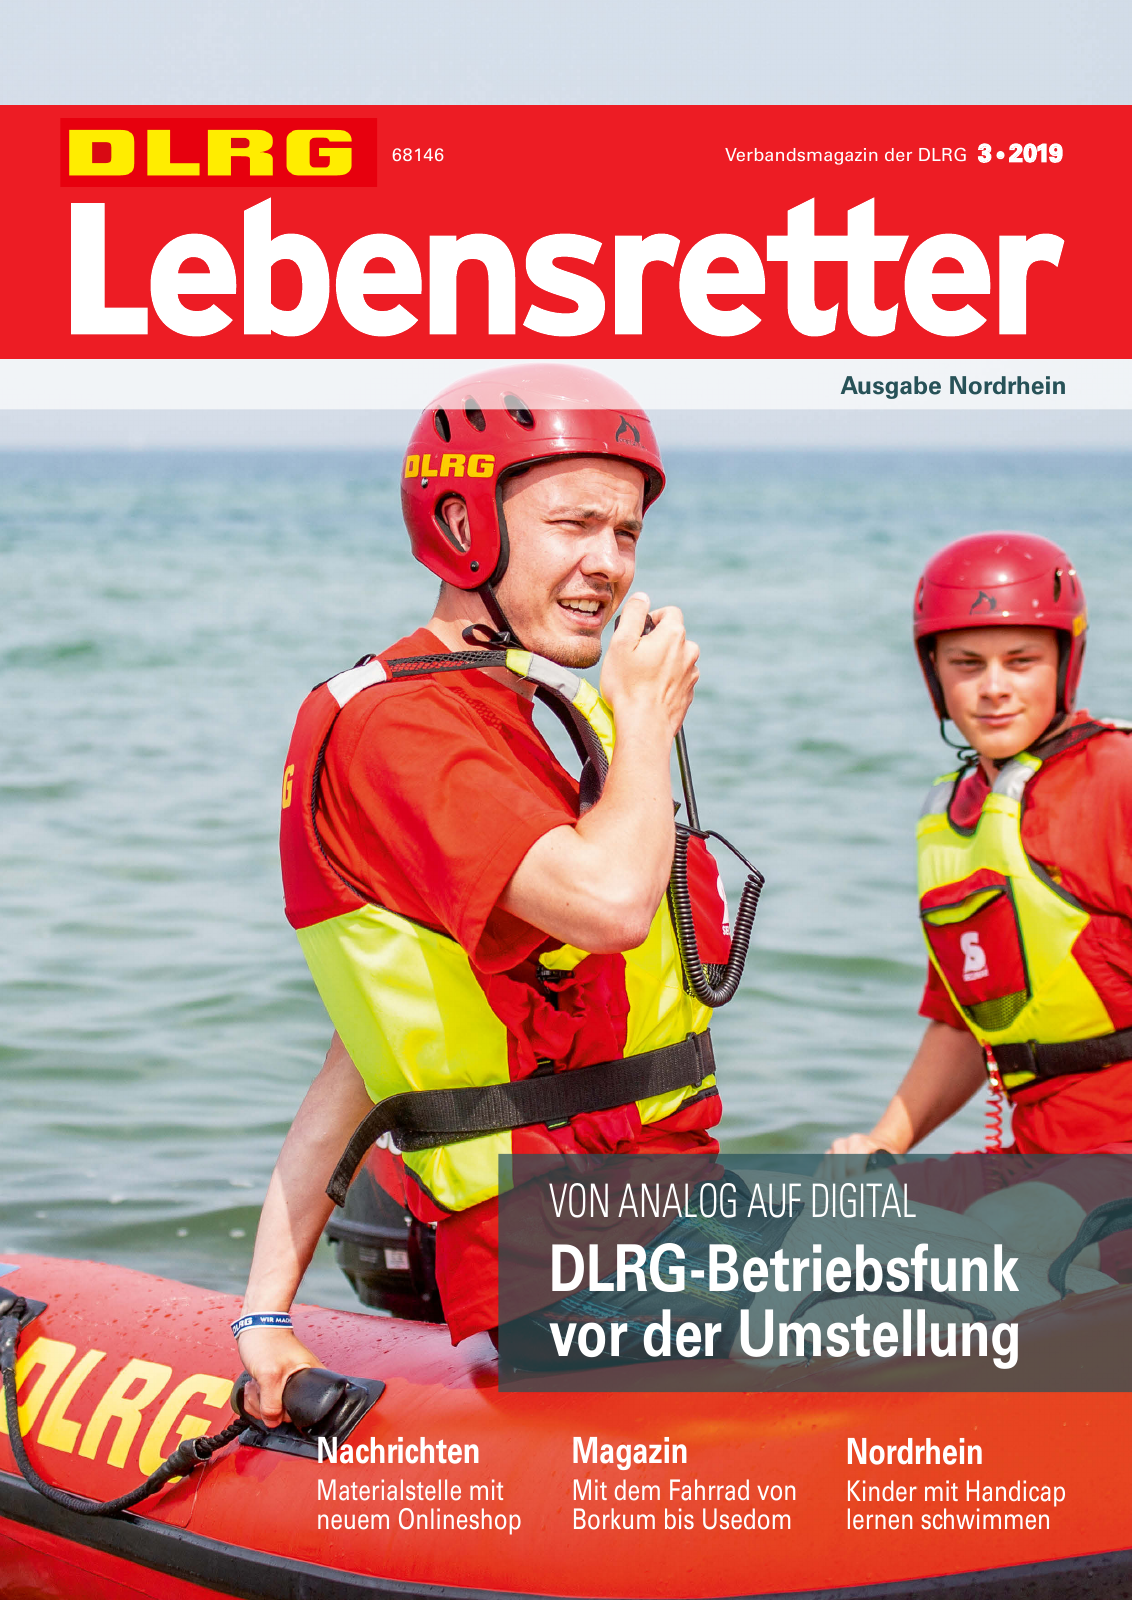 Vorschau Lebensretter 3/2019 - Nordrhein Regionalausgabe Seite 1